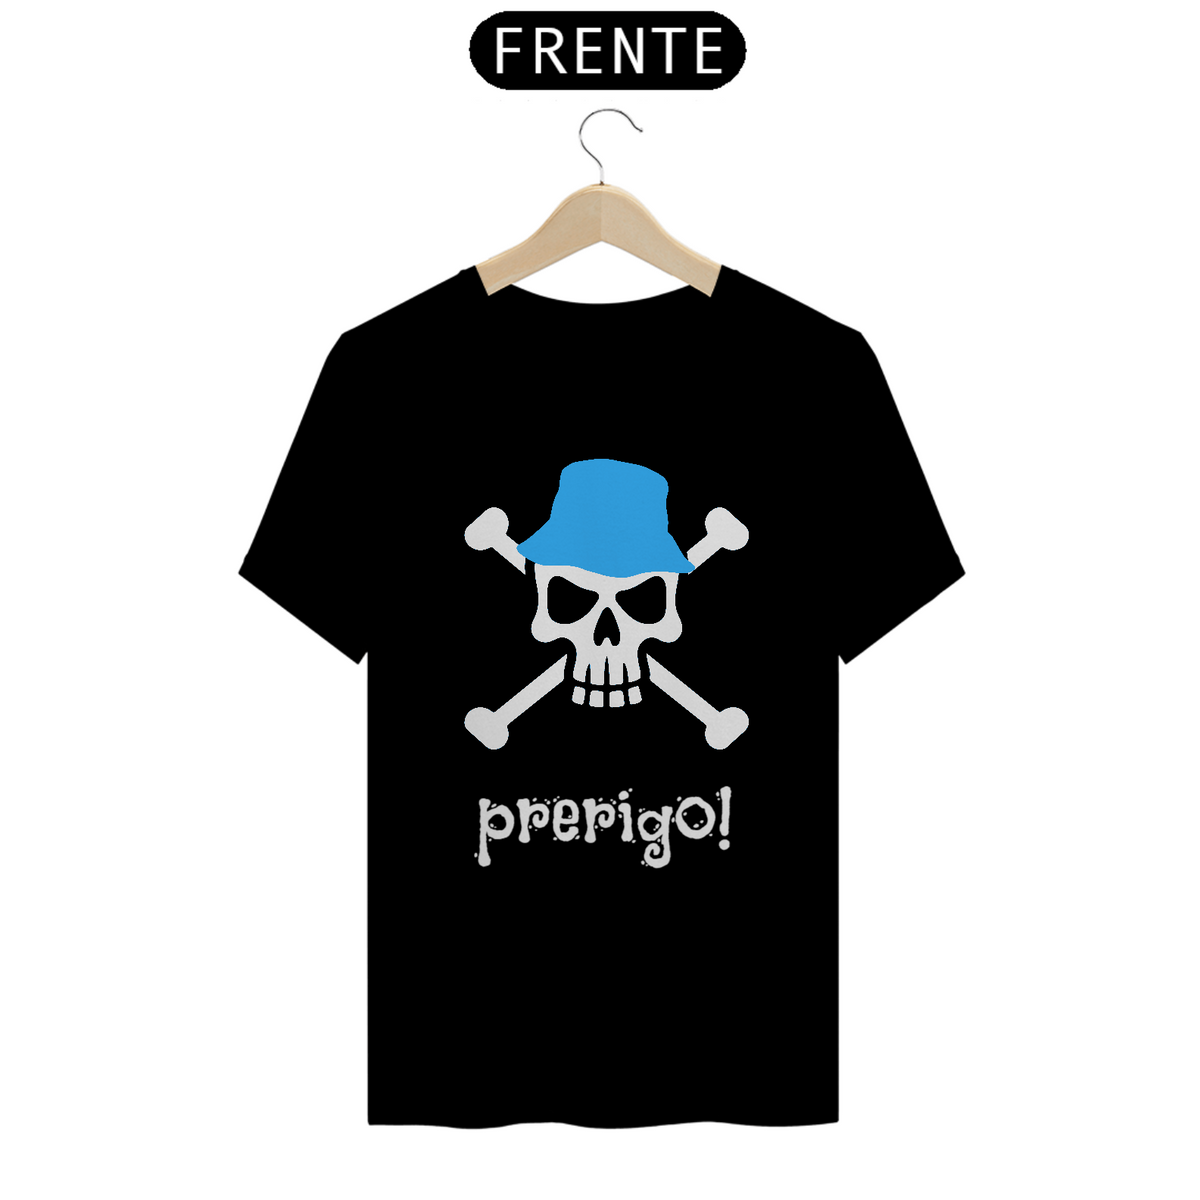 Nome do produto: Camiseta Prerigo